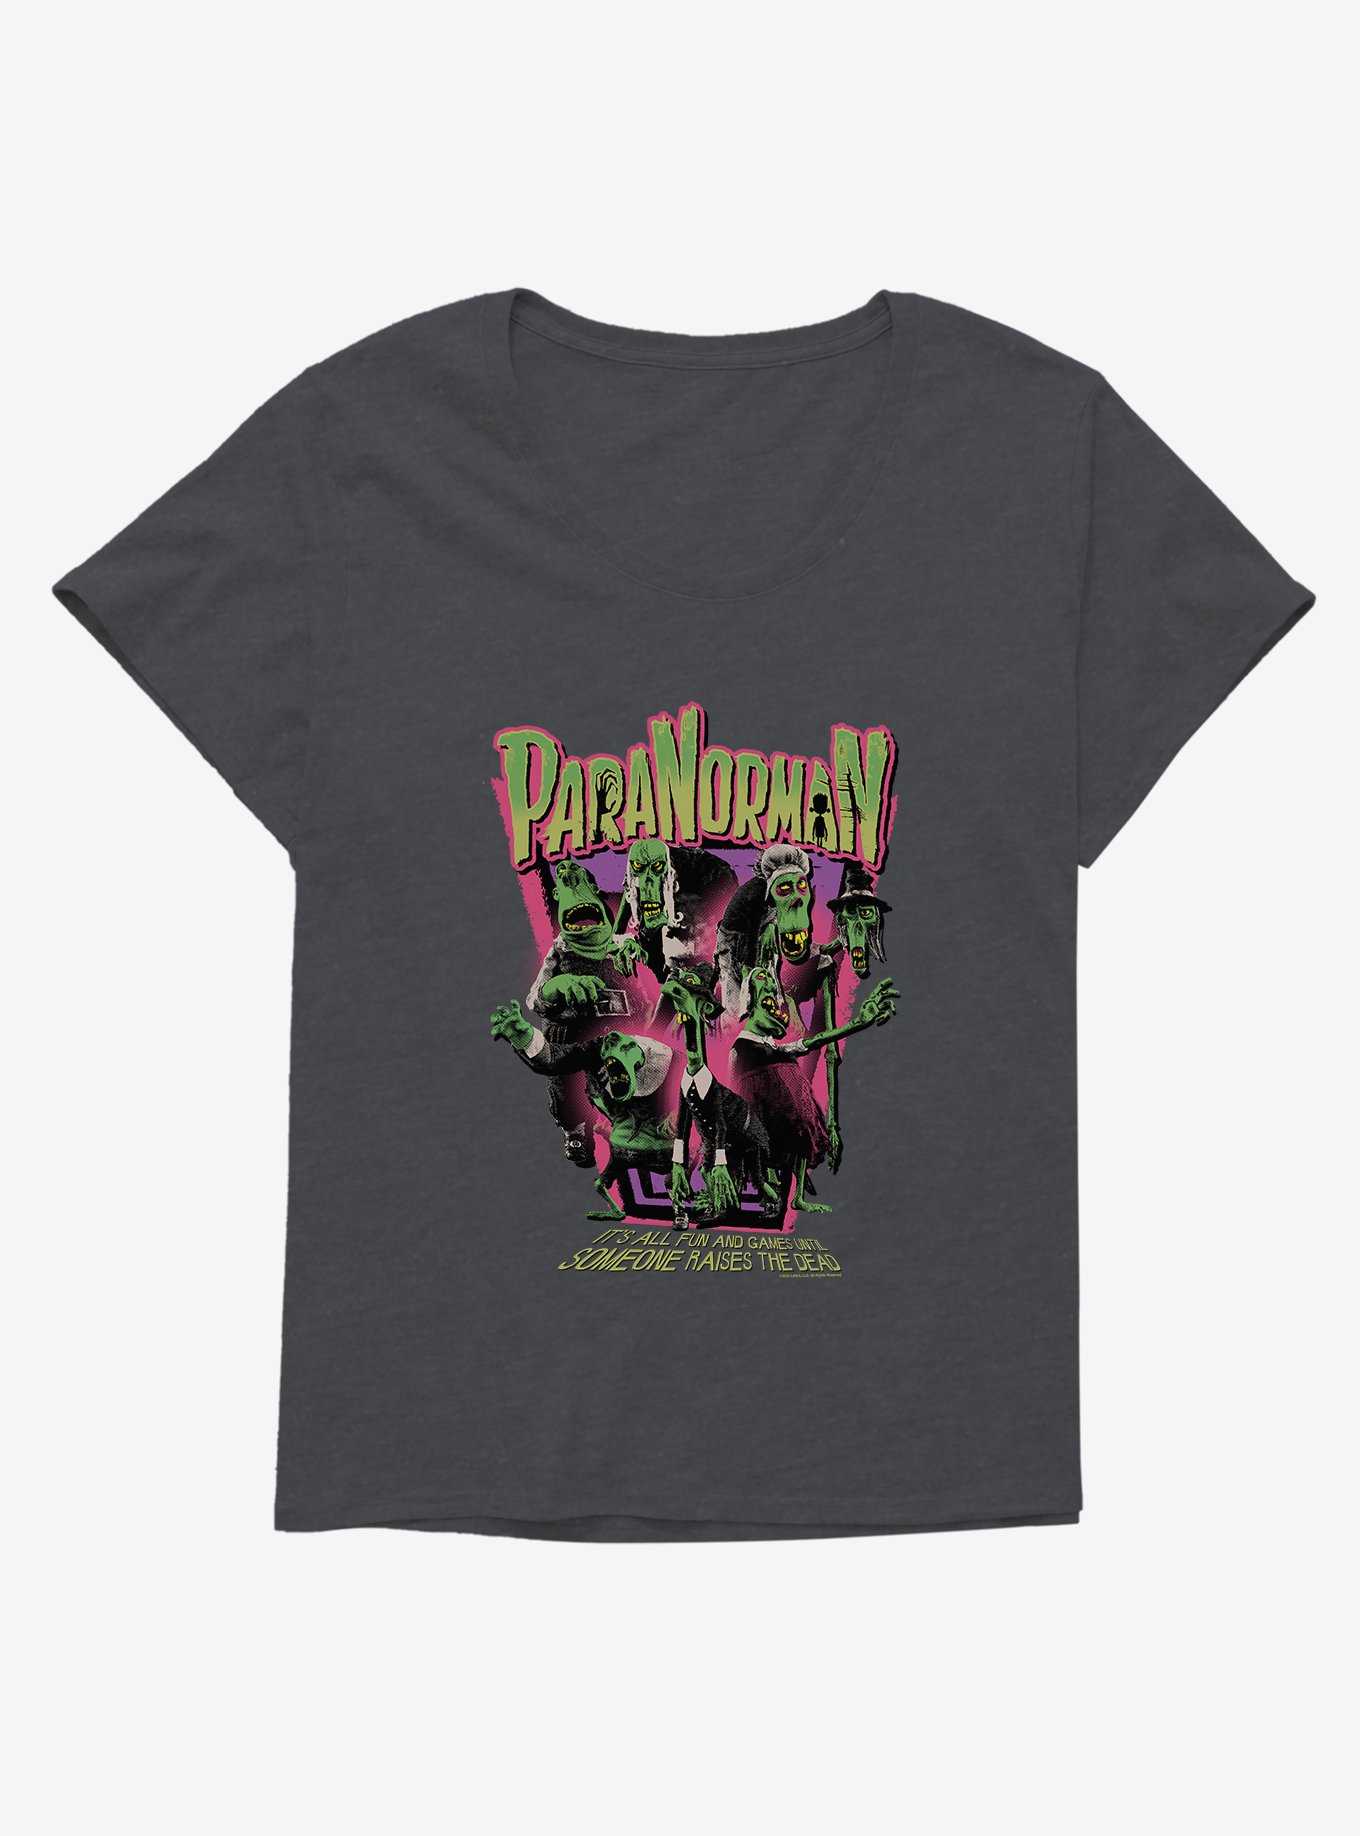 Paranorman Raises The Dead Girls T-Shirt Plus Size, , hi-res